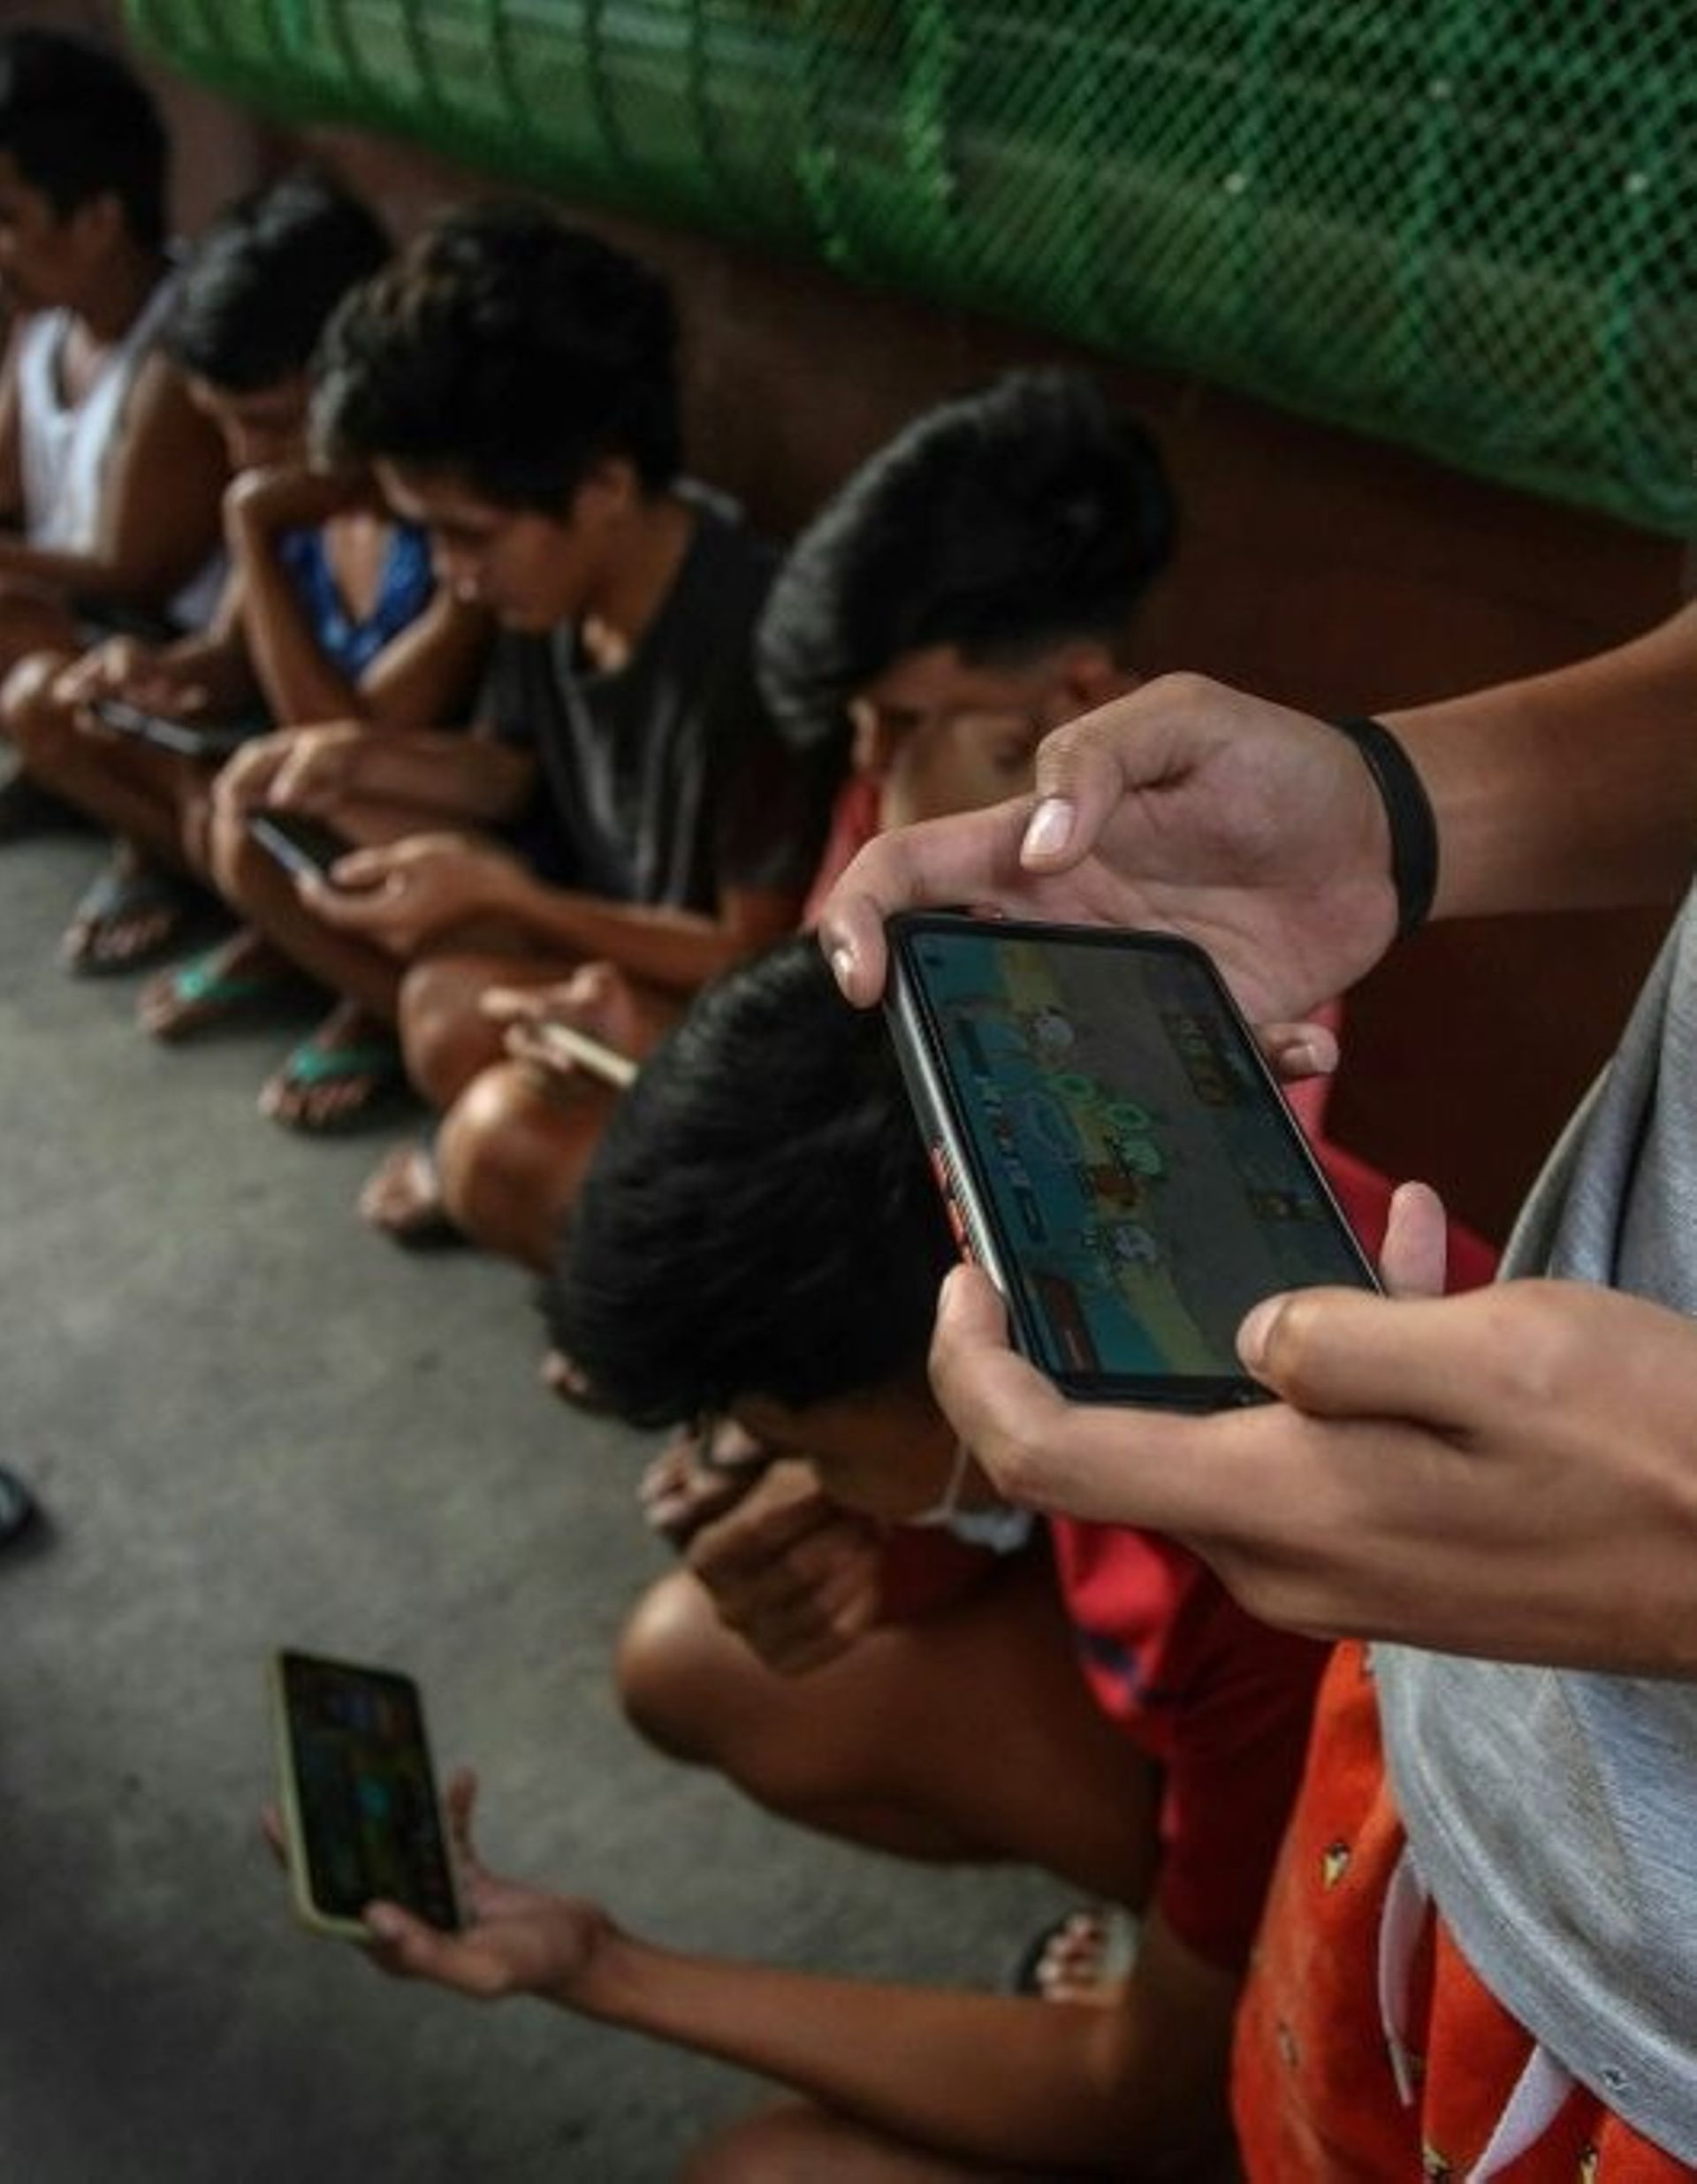 Des gamers jouent sur leurs smartphones au jeu vidéo NFT Axie Infinity, le 15 décembre 2021 à Malabon, dans la banlieue de Manille, aux Philippines